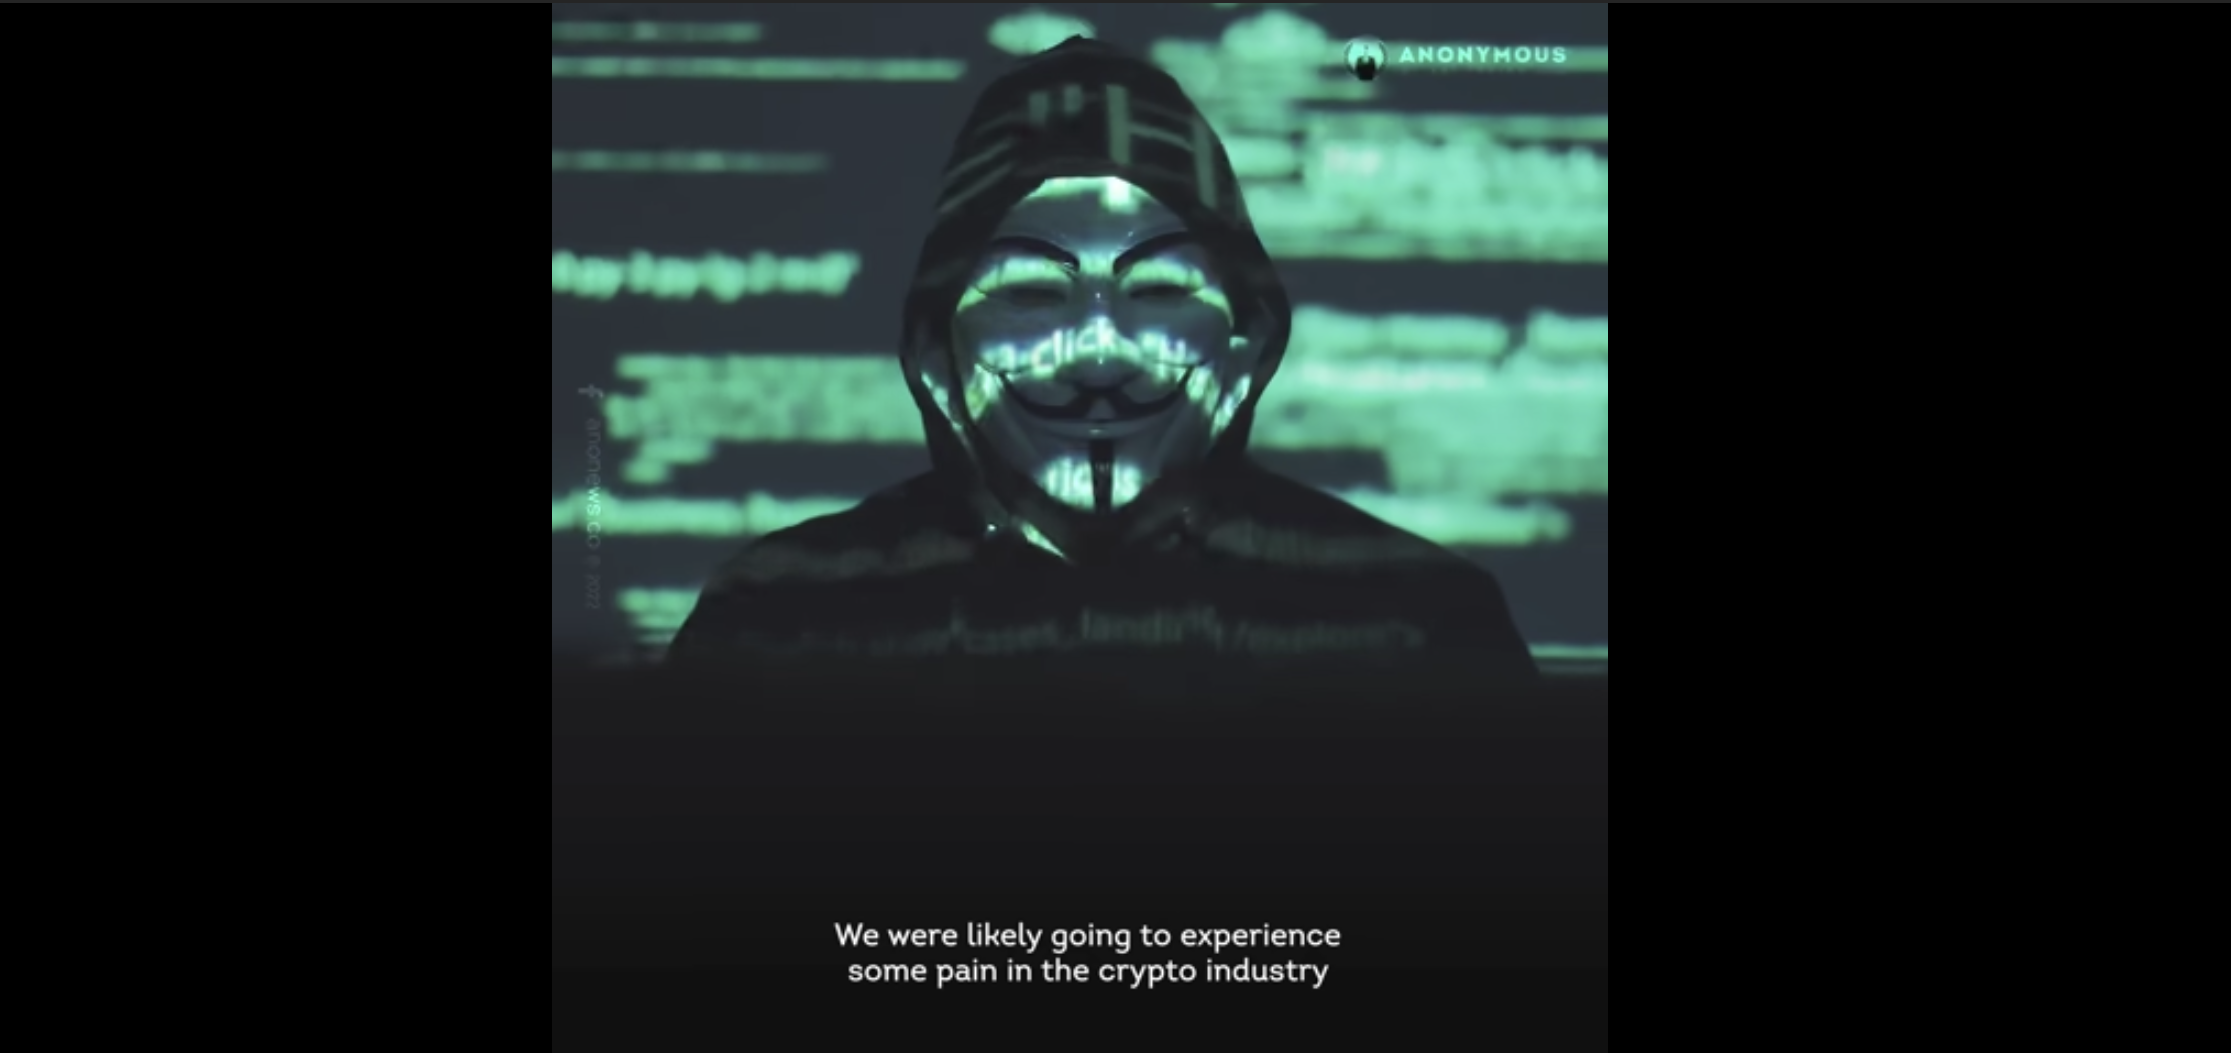 虛幣崩盤｜黑客組織Anonymous聲討Terra創辦人 斥竊取數十億美元 加入各國政府調查